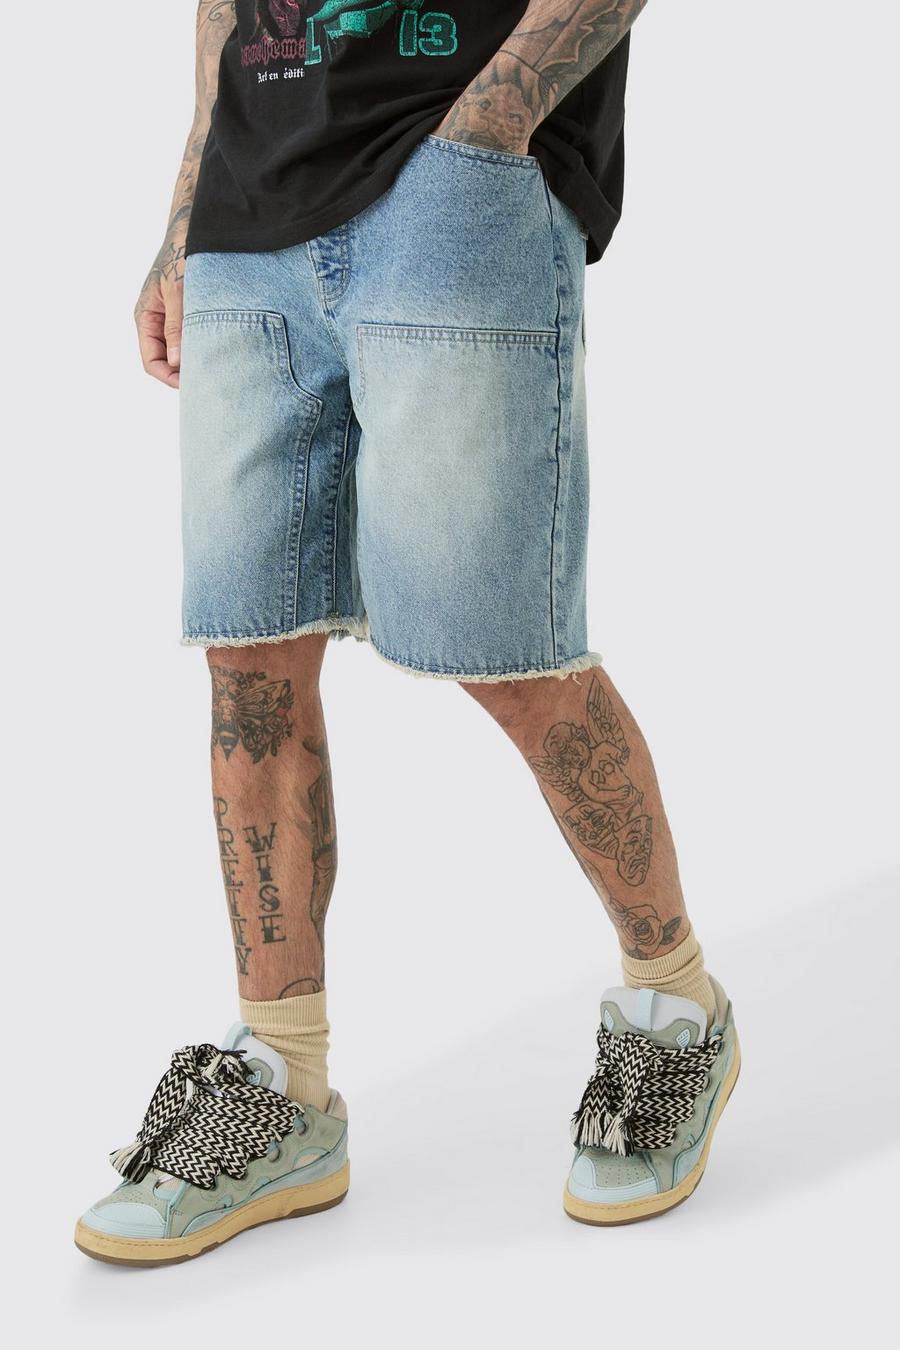 Pantalones cortos Tall vaqueros estilo carpintero sin tratar con lavado claro y bajo sin acabar, Light wash